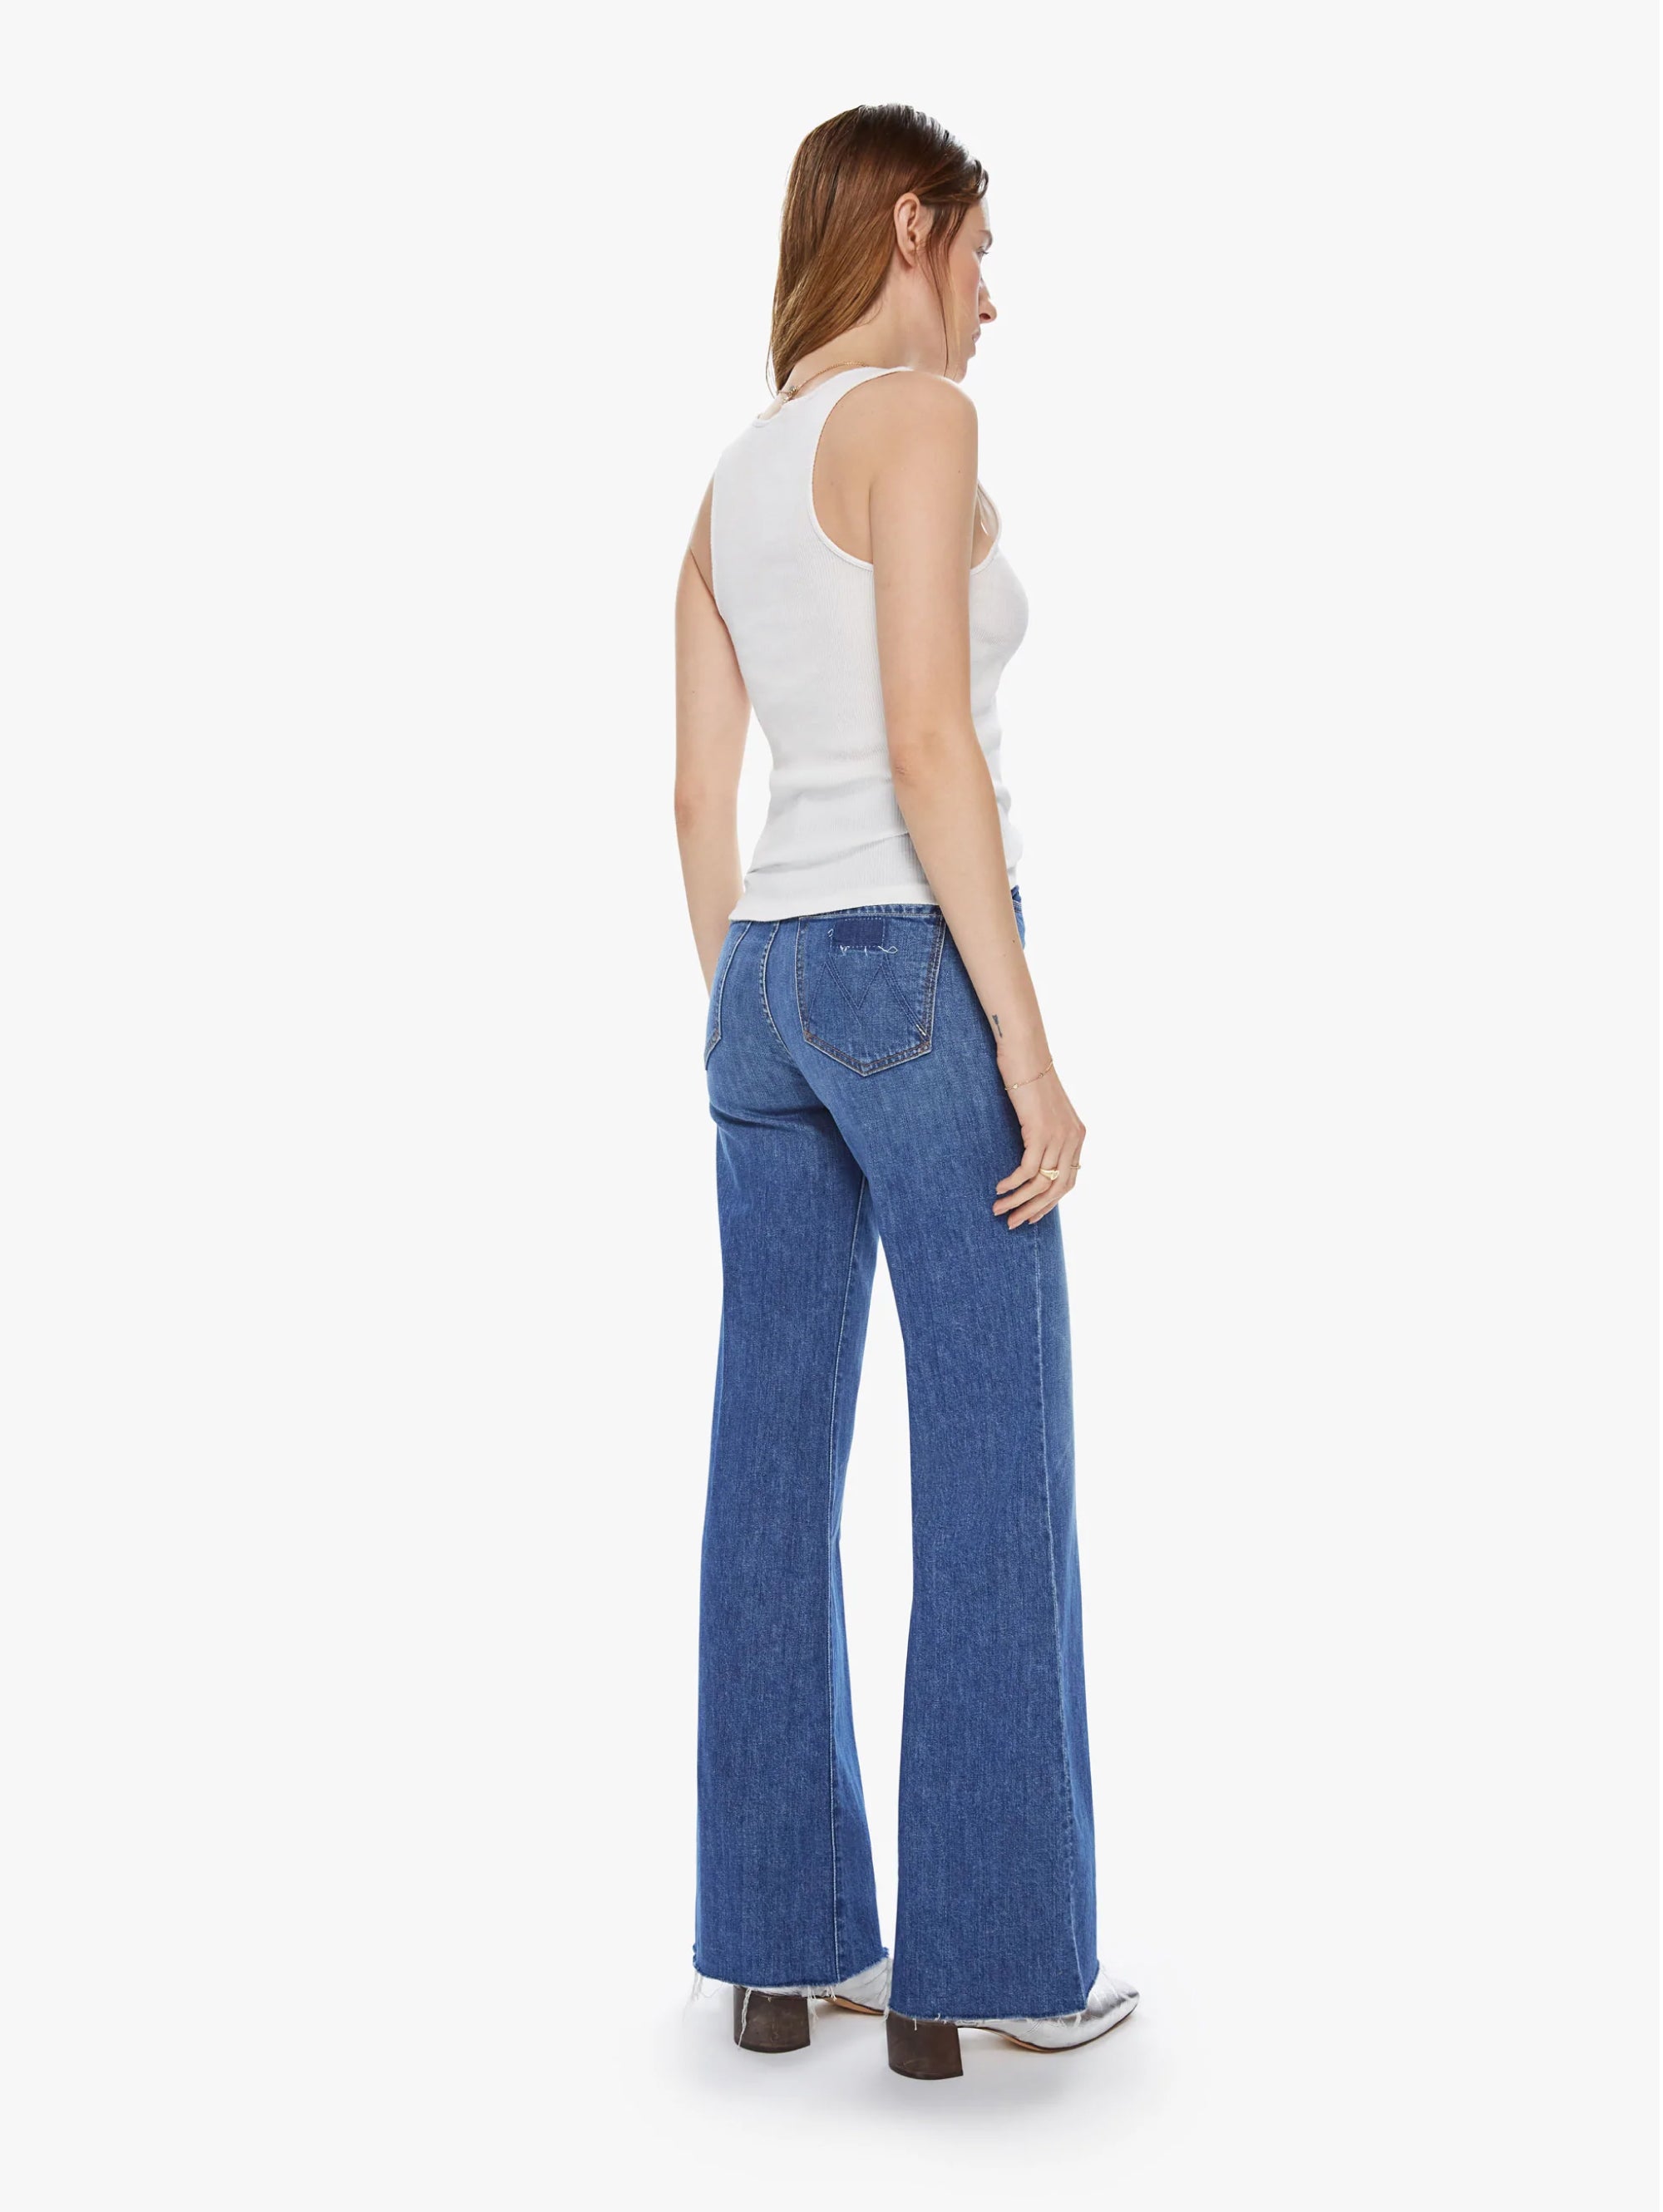 Ausgestellte Jeans mit blauem, ausgefranstem Saum